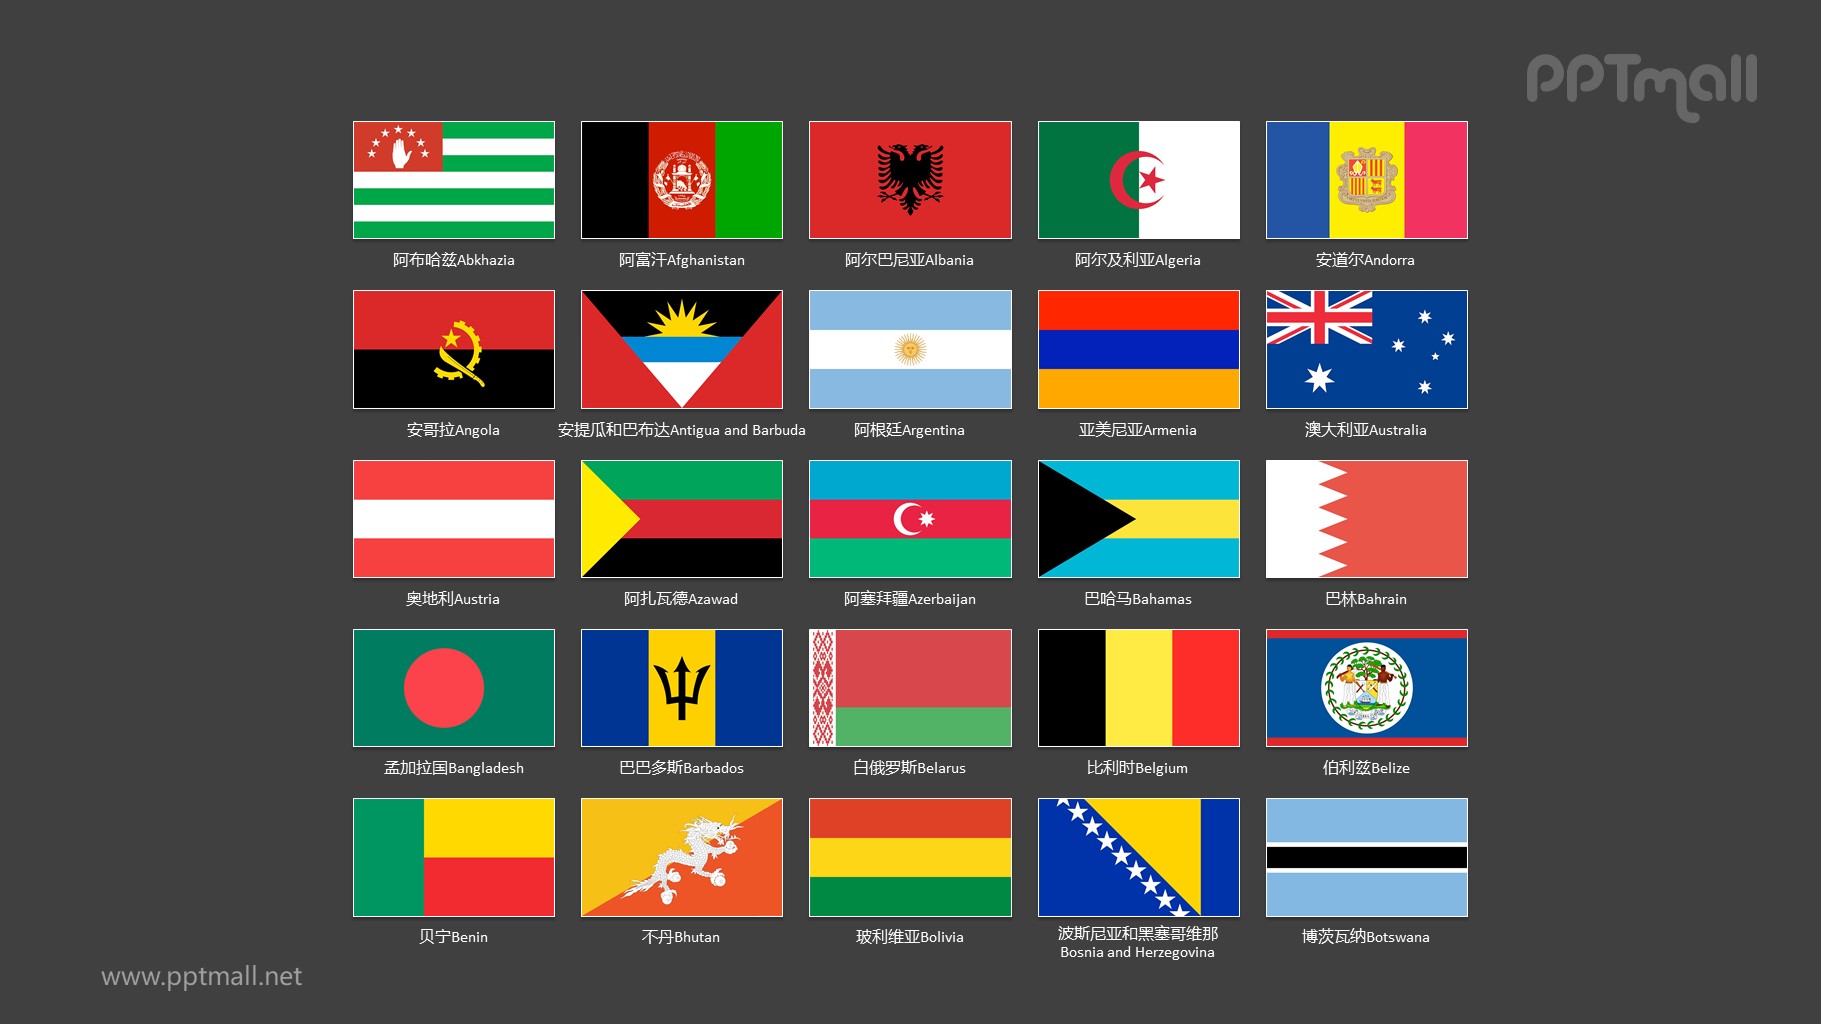 世界各国国旗/国家按字母A-B排序的国旗图片PPT素材集合下载